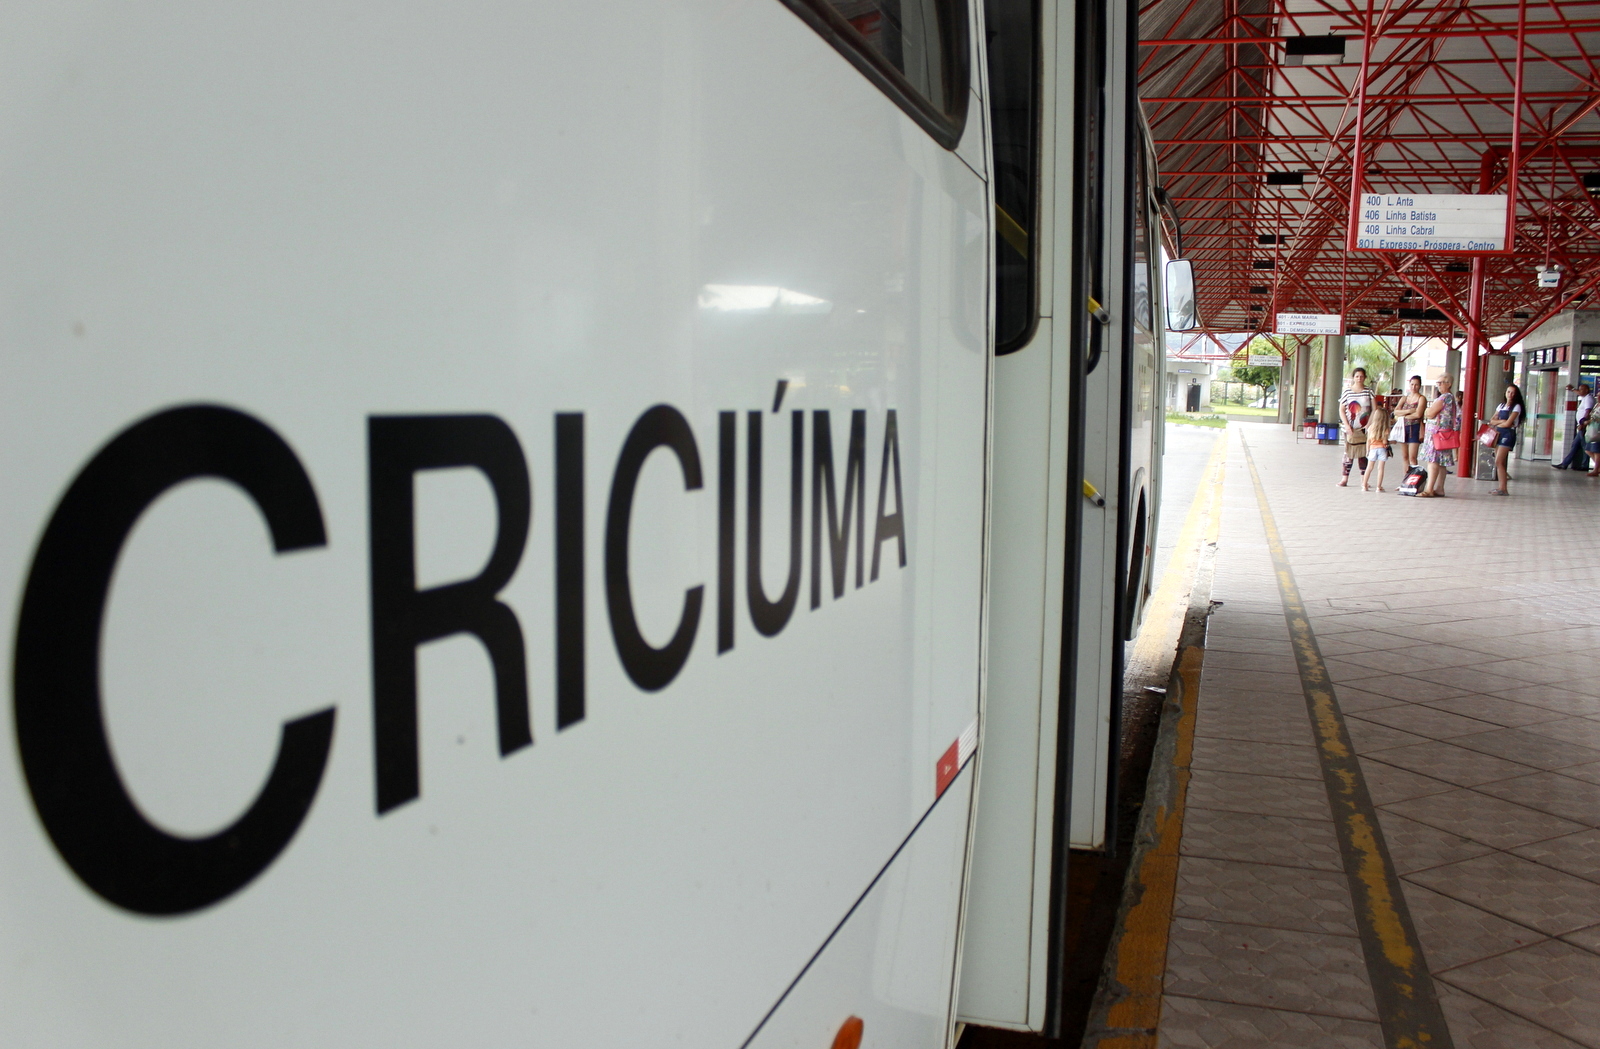 Horários e itinerários do transporte coletivo de Criciúma são reajustados com base em estudos técnicos